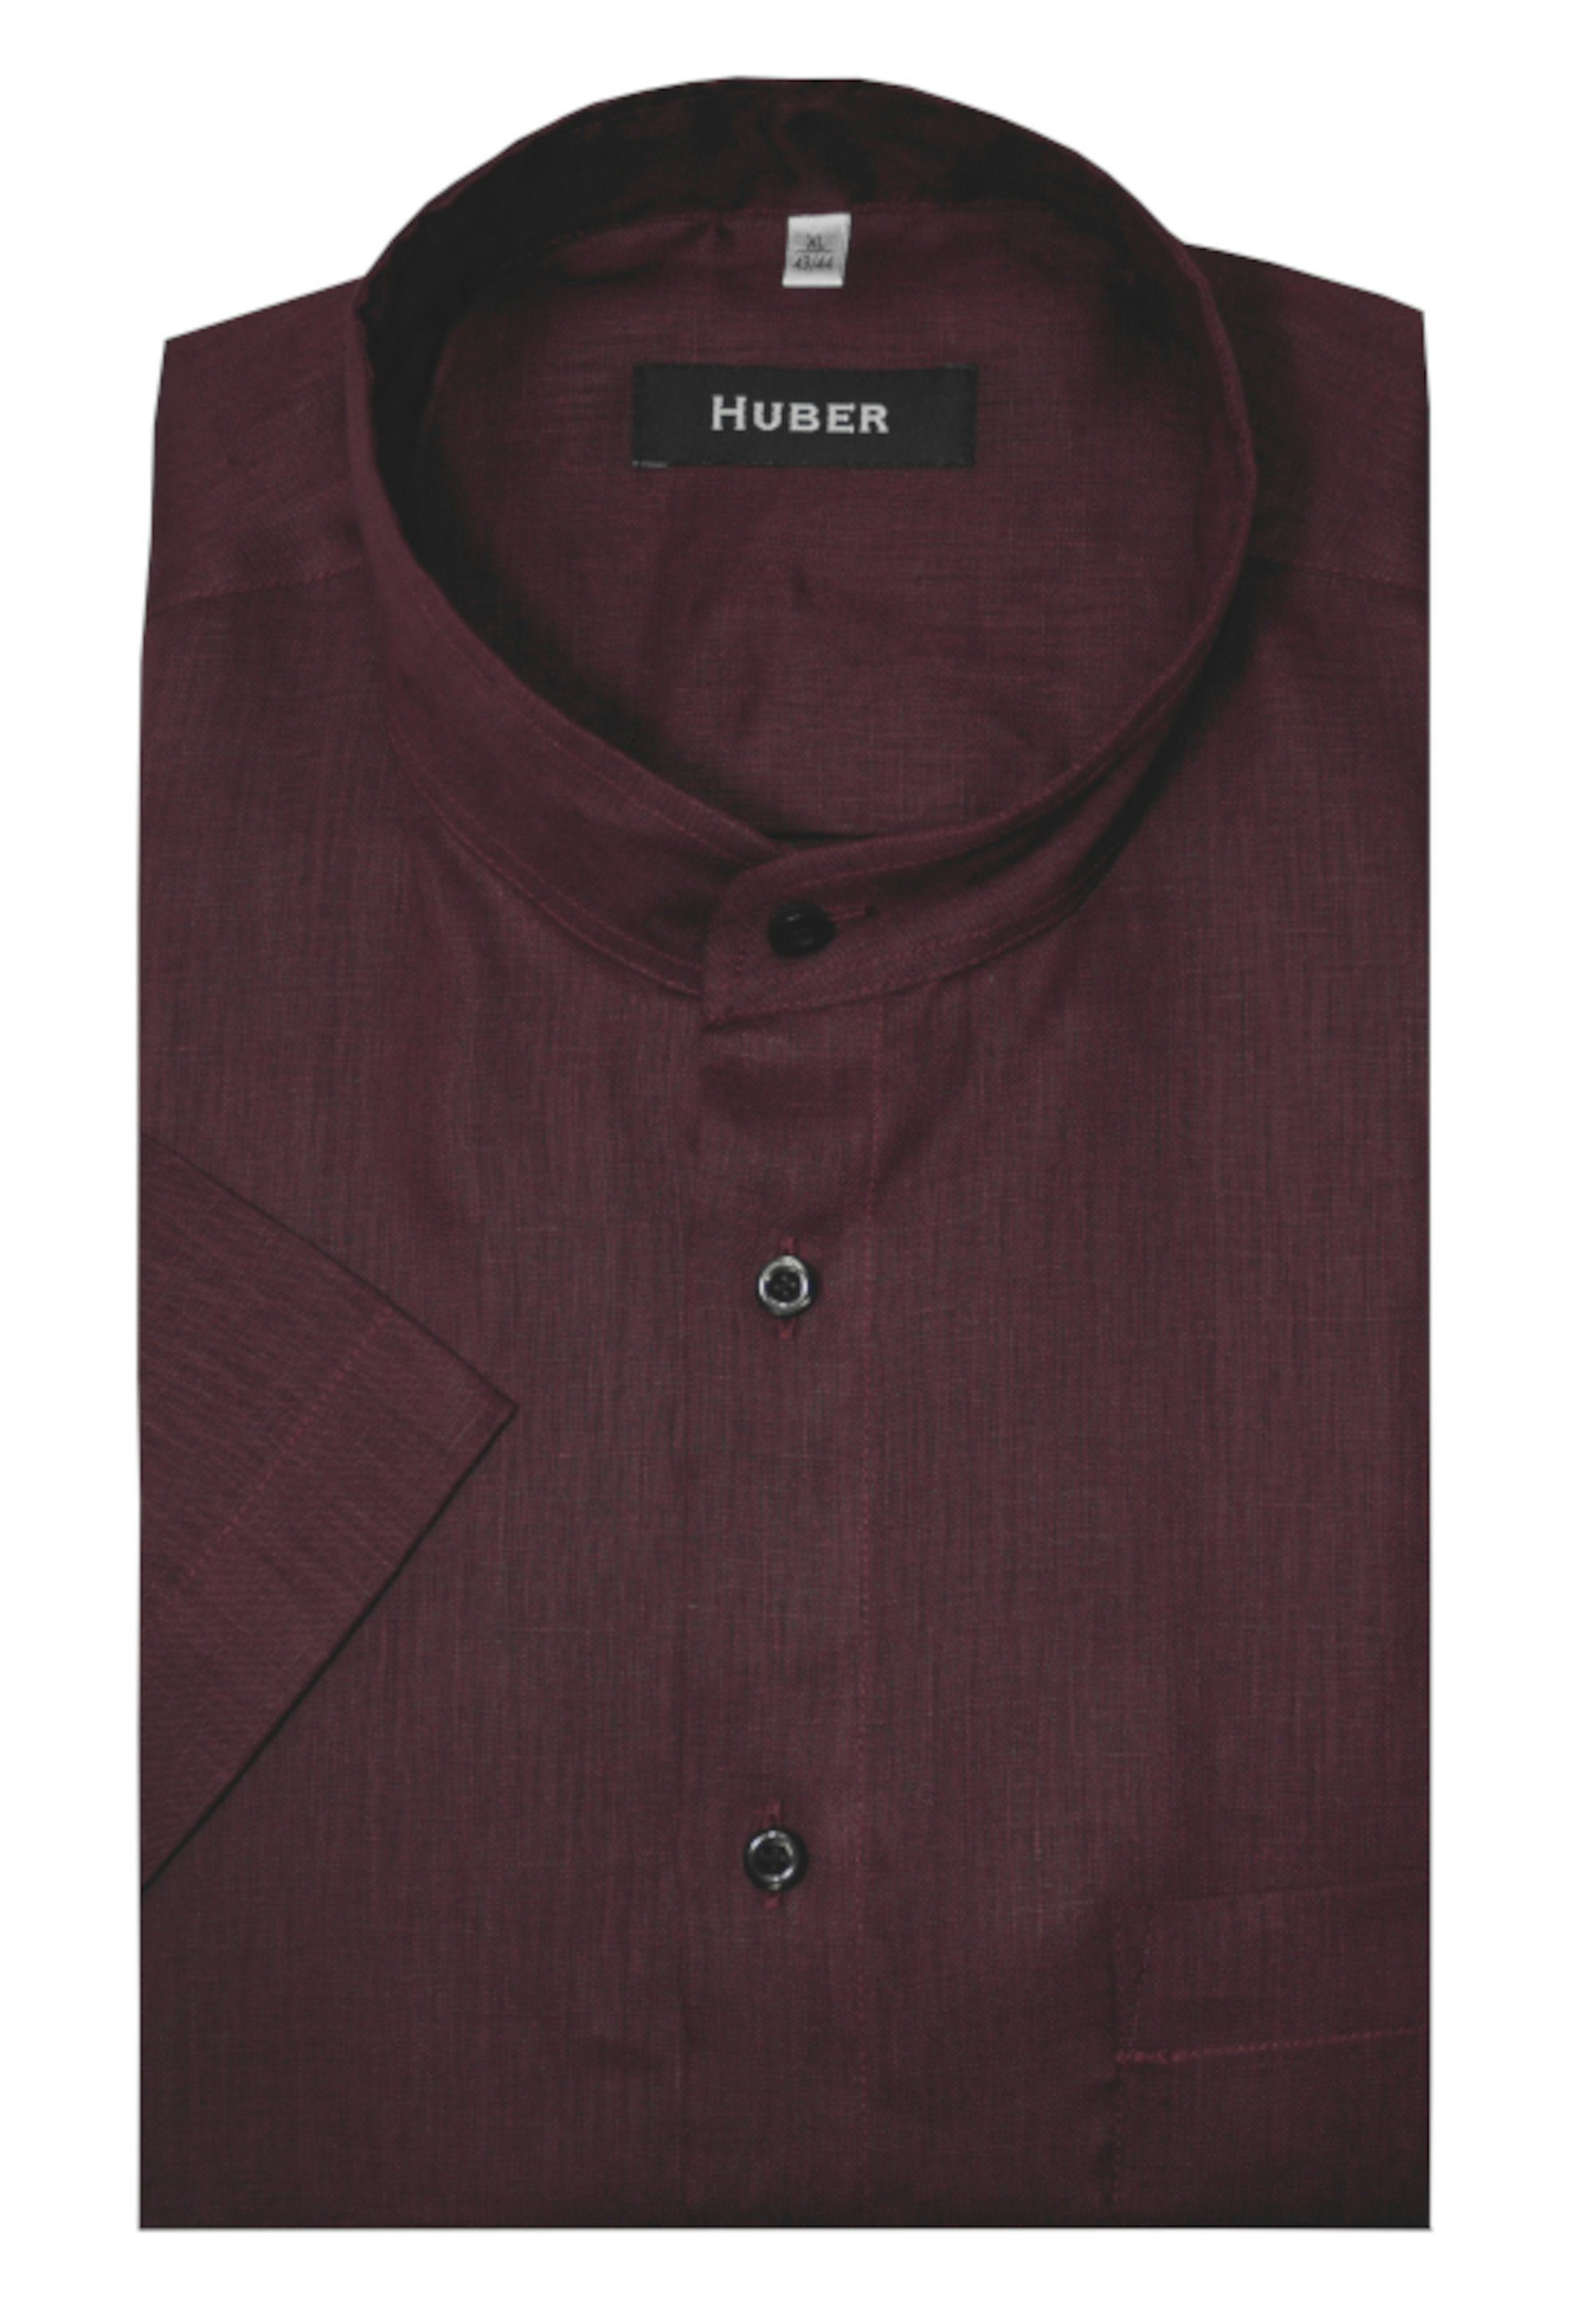 Kurzarm rot Stehkragen Kurzarmhemd Fit Huber HU-0114 100%Leinen-feiner leichter Stoff Hemden Regular